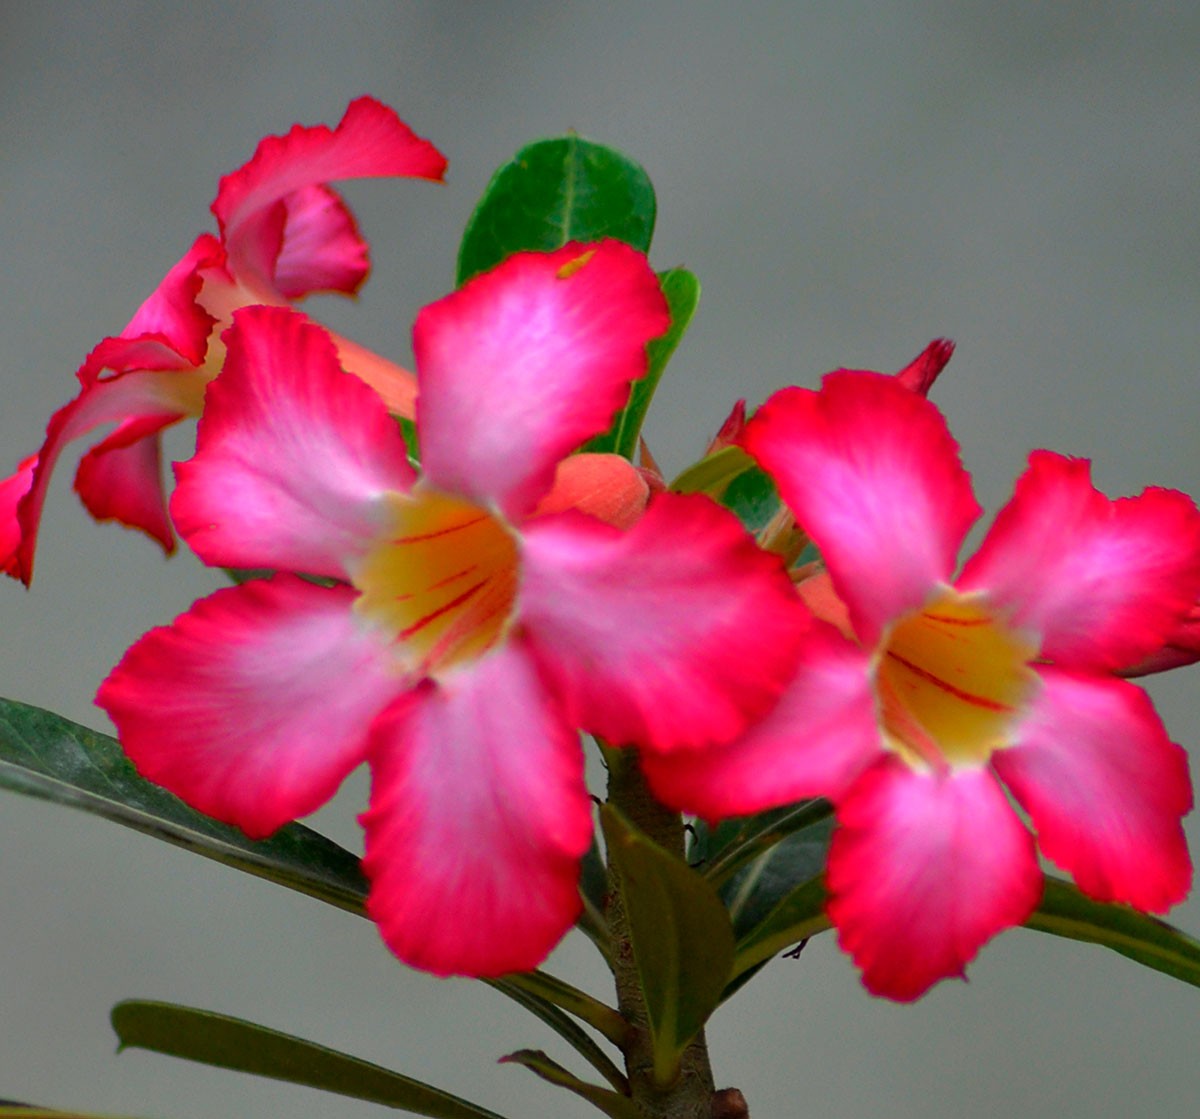 Rosa-do-deserto: como cuidar e cultivar a planta em casa - Casa e Jardim |  Flores